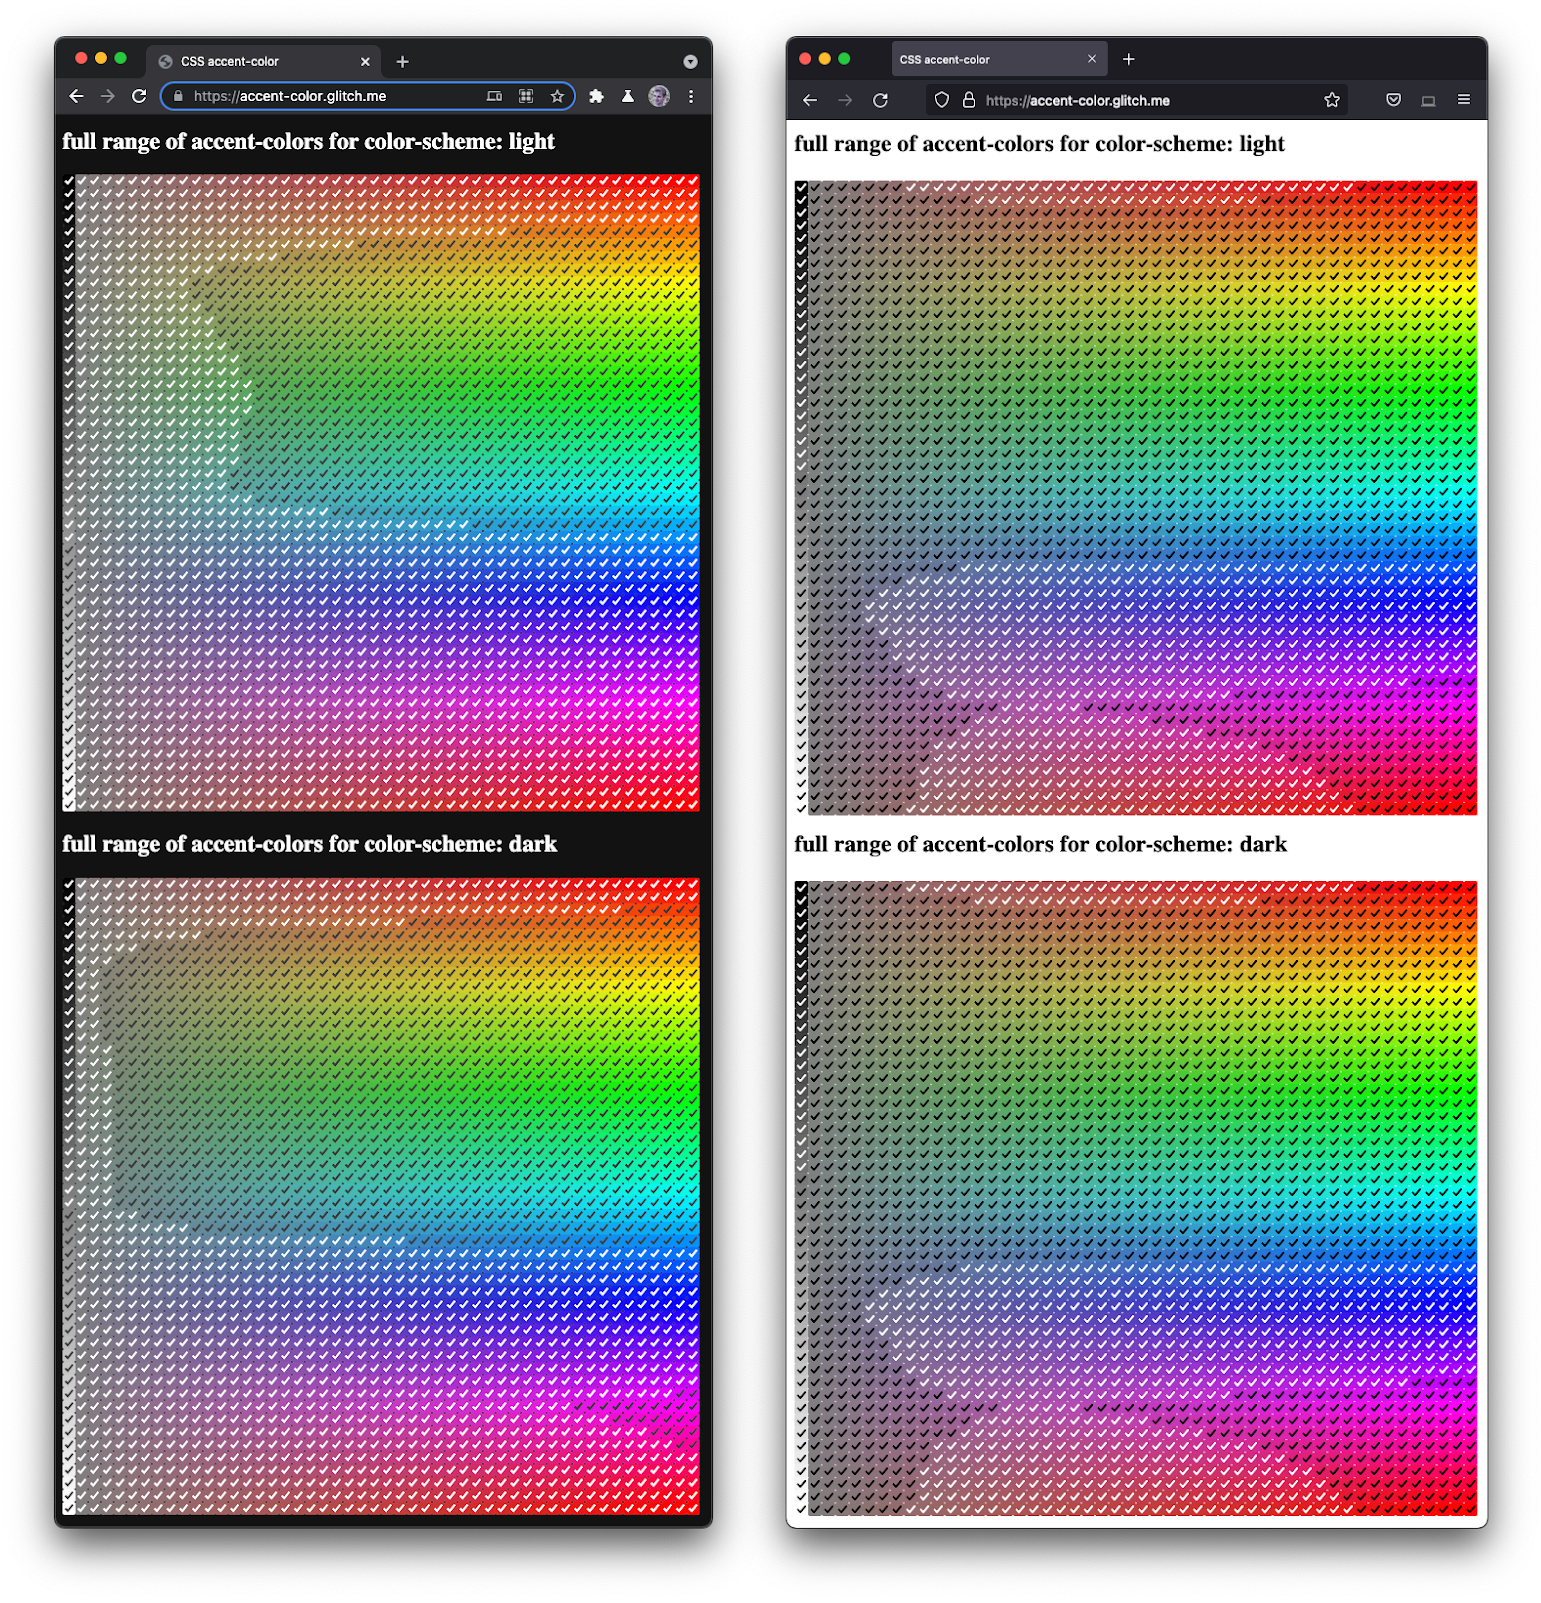 צילום מסך של Firefox ו-Chromium זה לצד זה, שמציג מגוון רחב של תיבות סימון בגוונים ובכהים שונים.